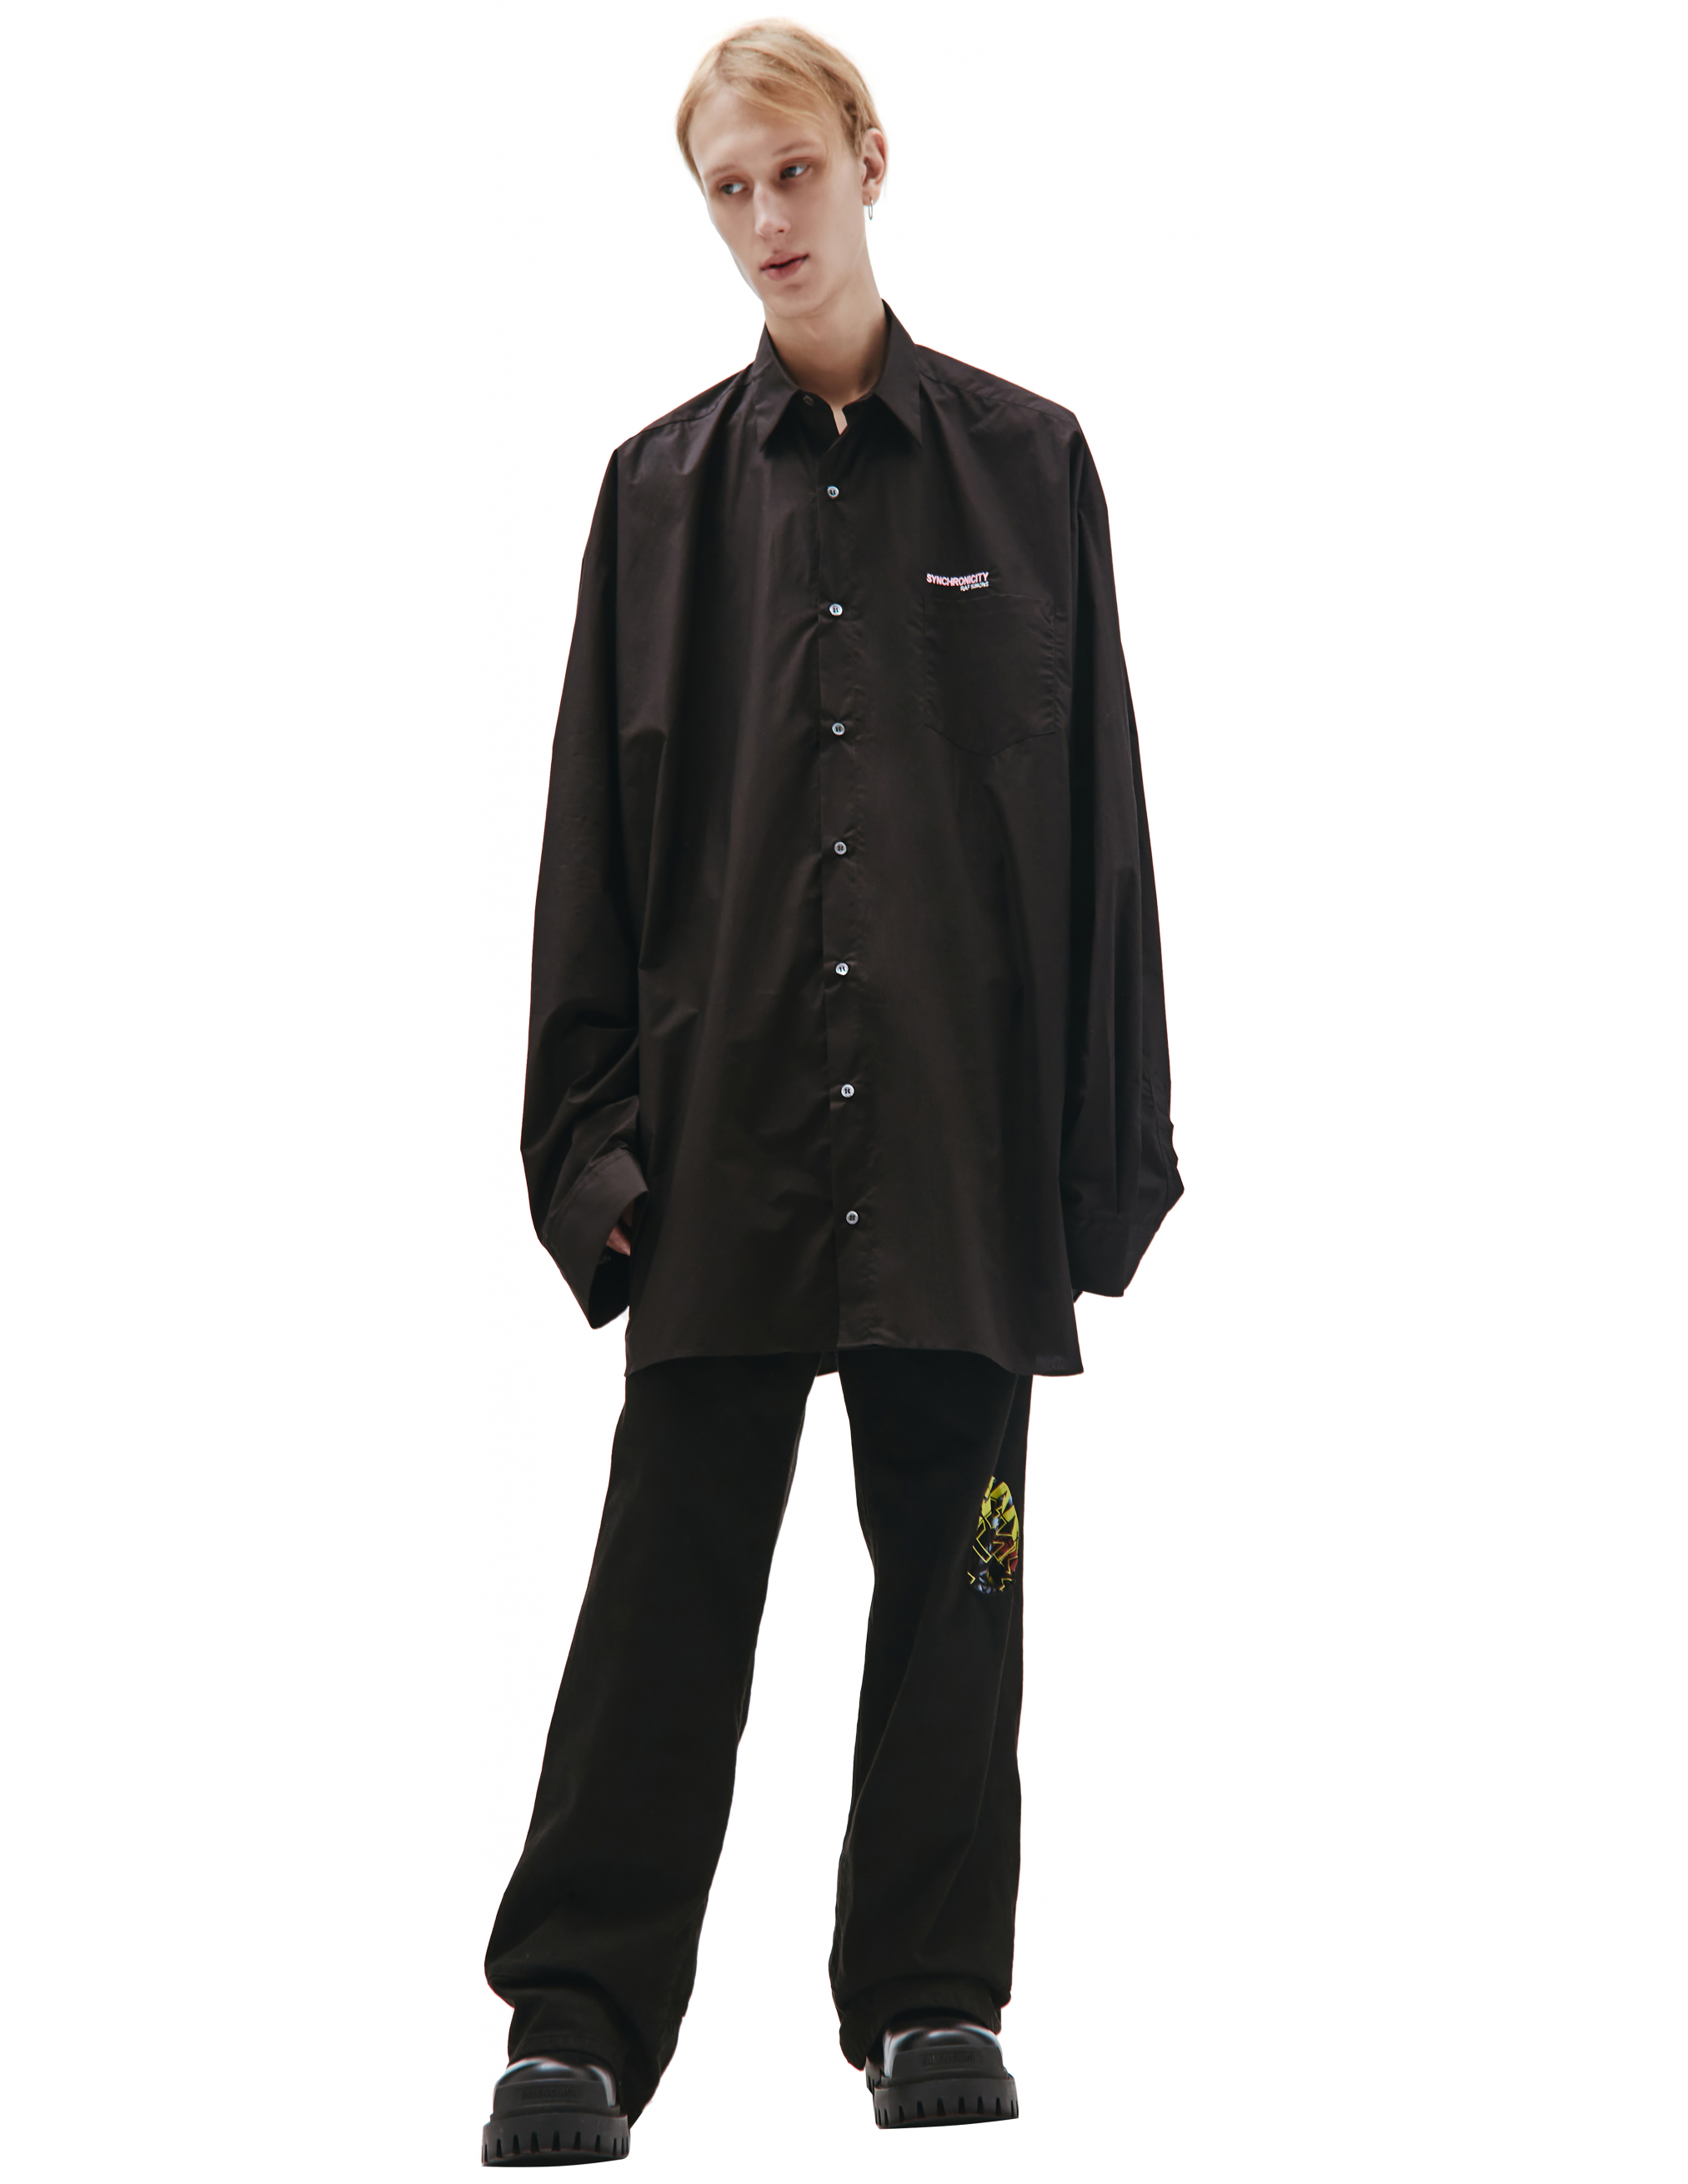 Черная Оверсайз рубашка с принтом Raf Simons 212-M251-10007-0099, размер 54;52;50;48